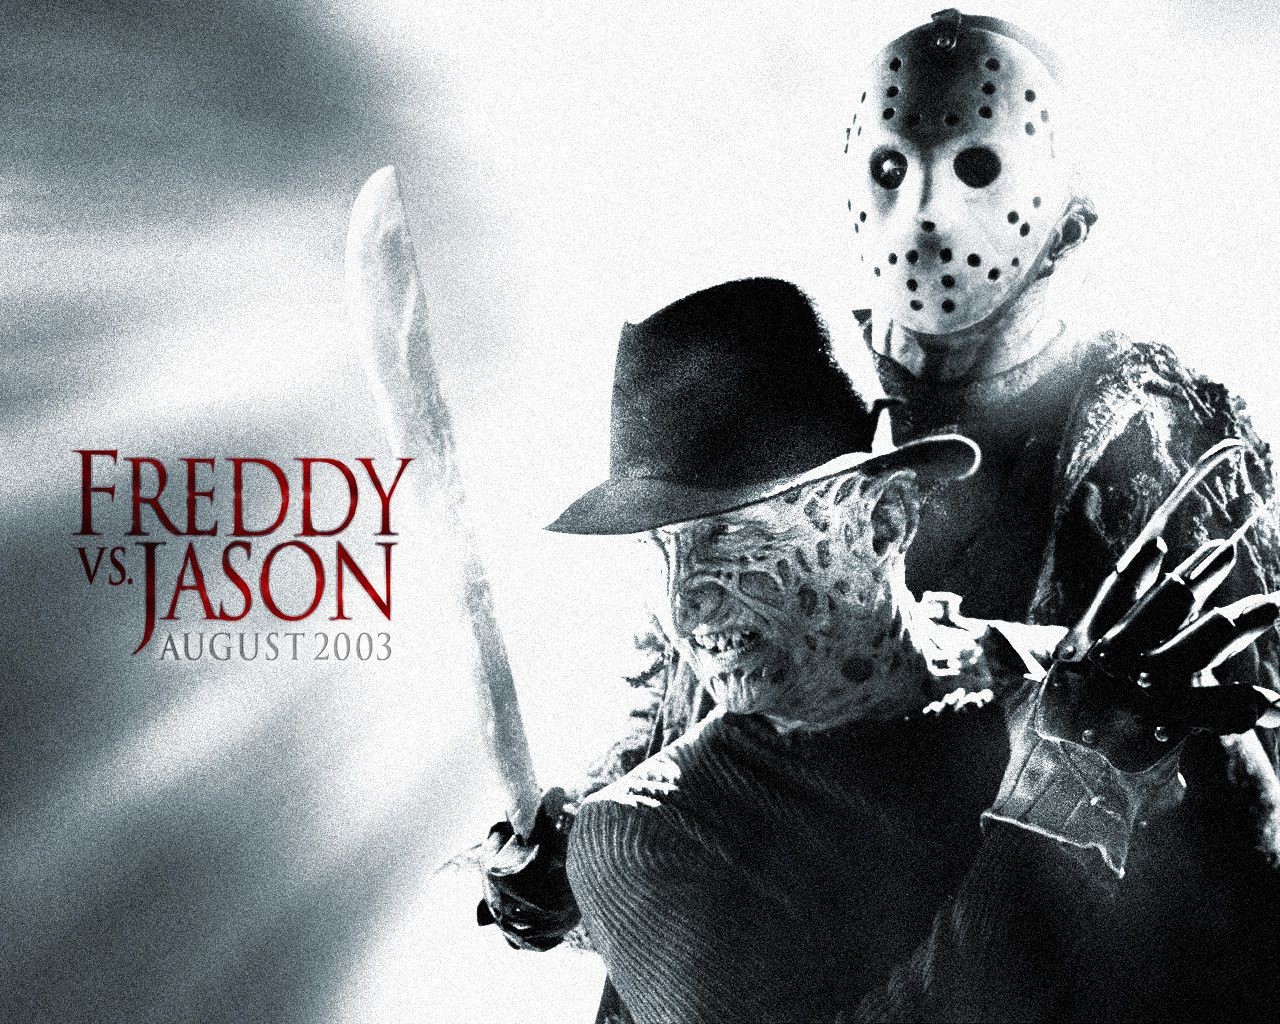 Freddy vs Jason Death Match